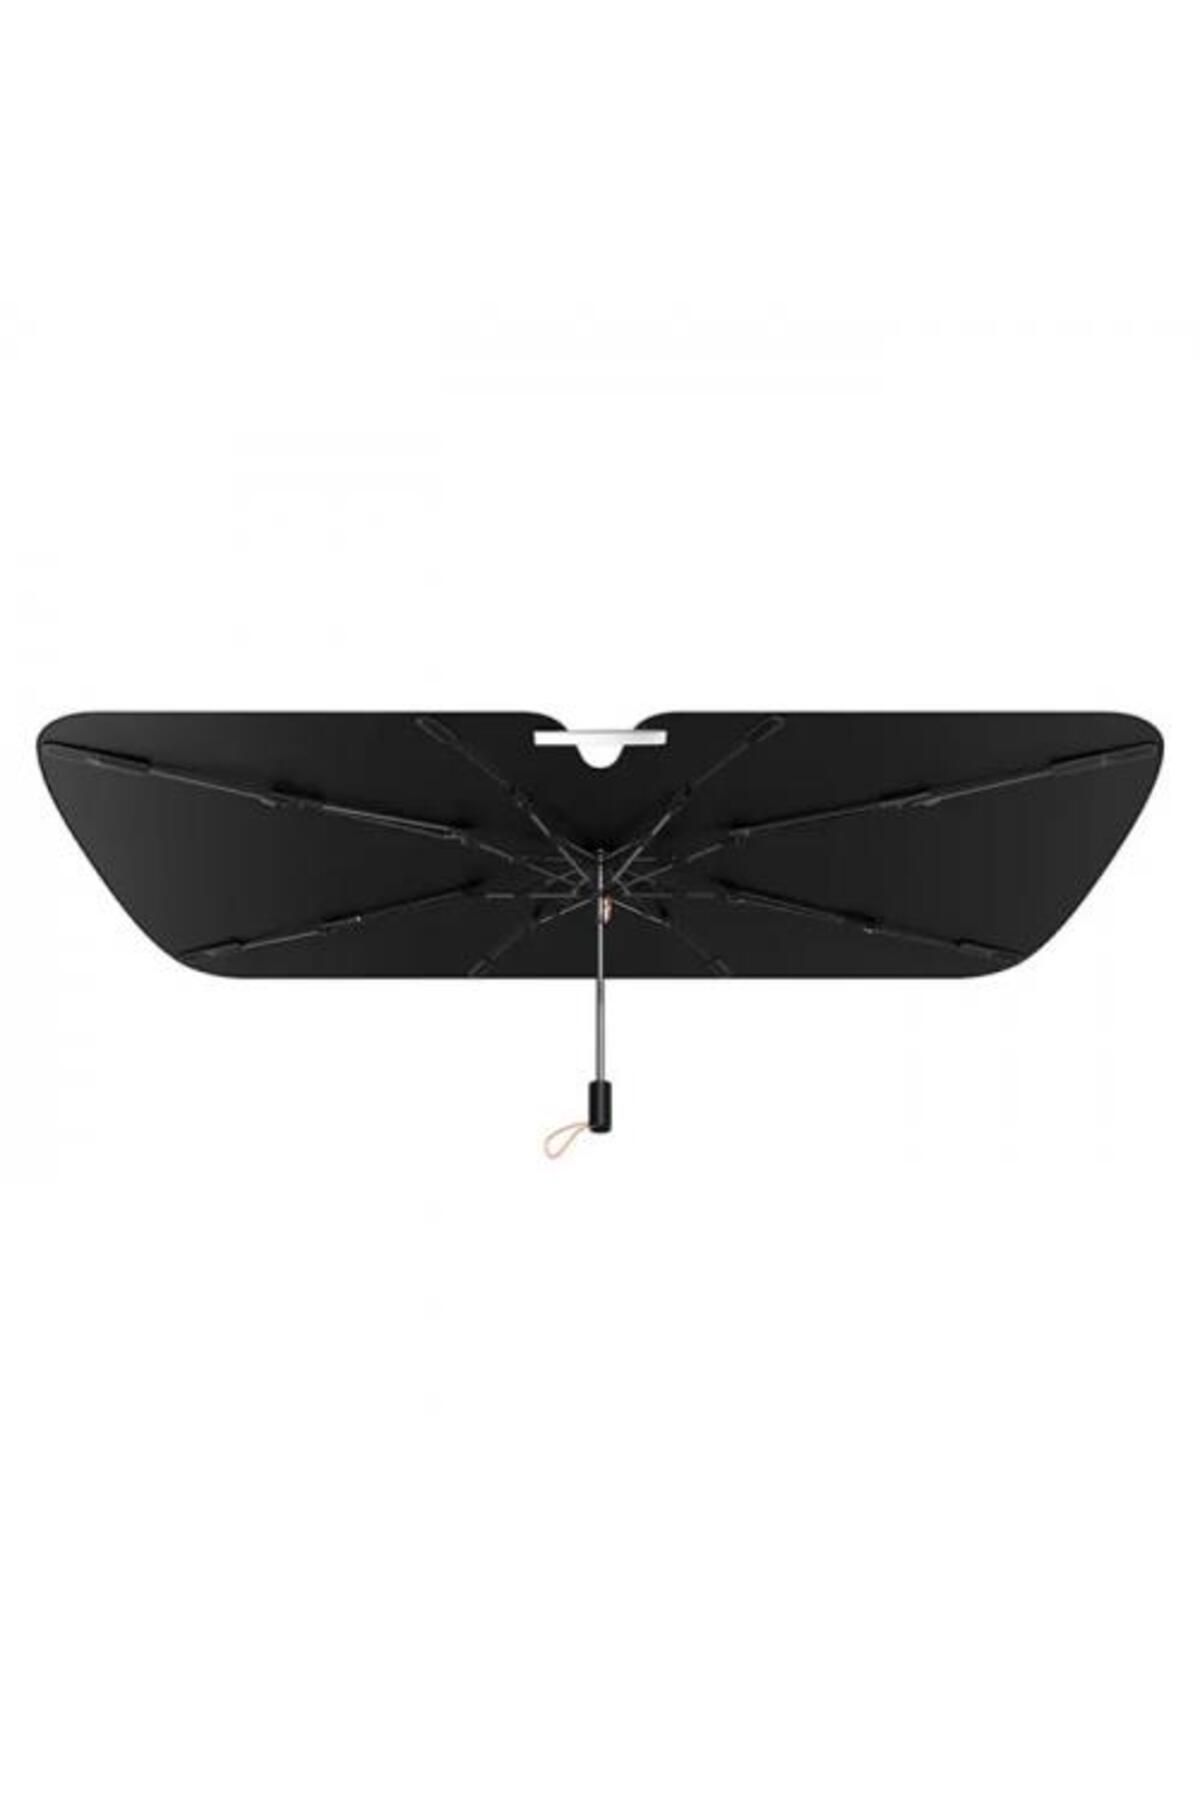 Baseus 3 Katmanlı Yarasa Kanat Tasarımlı Çantalı 141cm*76cm Araç Ön Cam Güneşlik Şemsiyesi Araç Koru